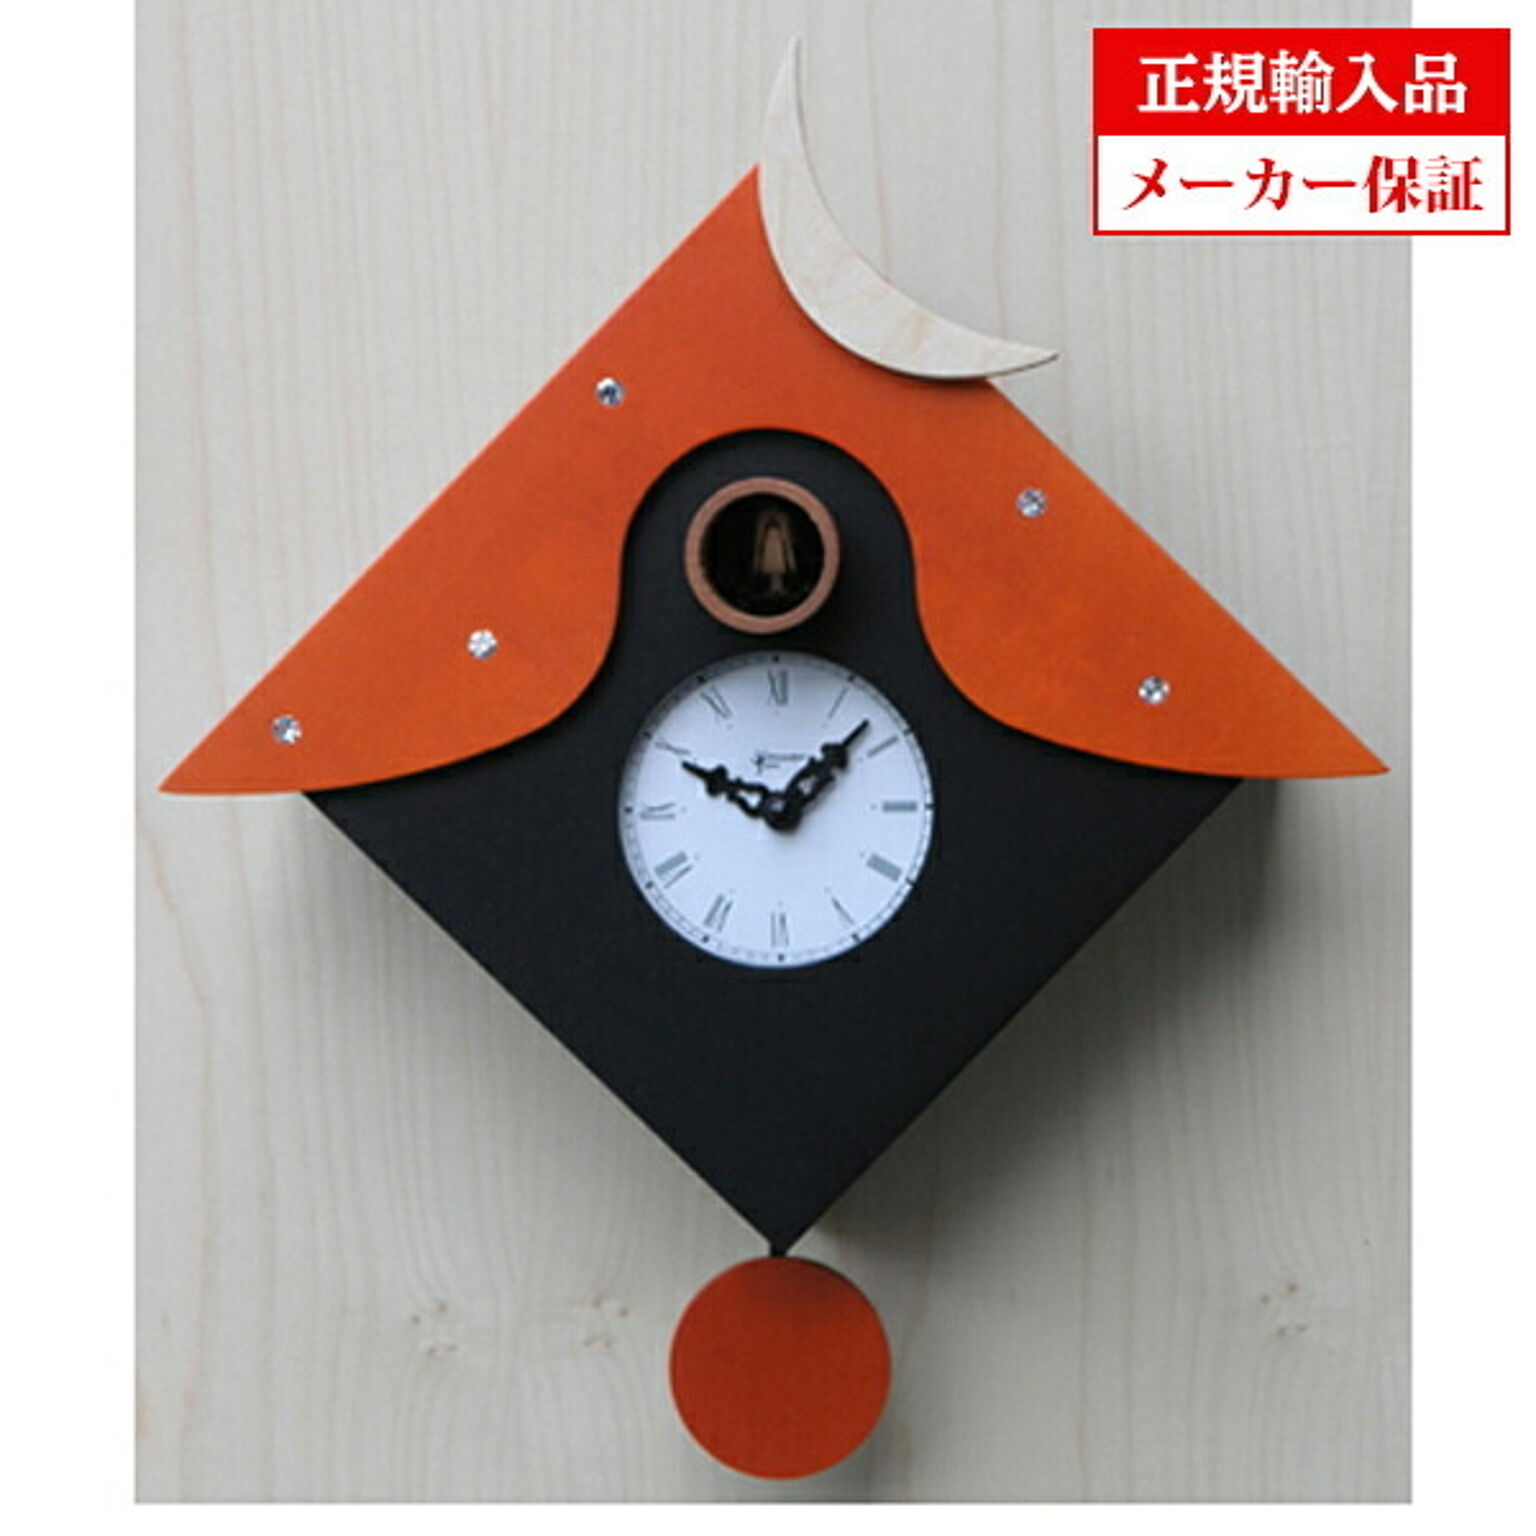 【正規輸入品】 イタリア ピロンディーニ 104B Pirondini 木製鳩時計 Cucu CTRANT オレンジ